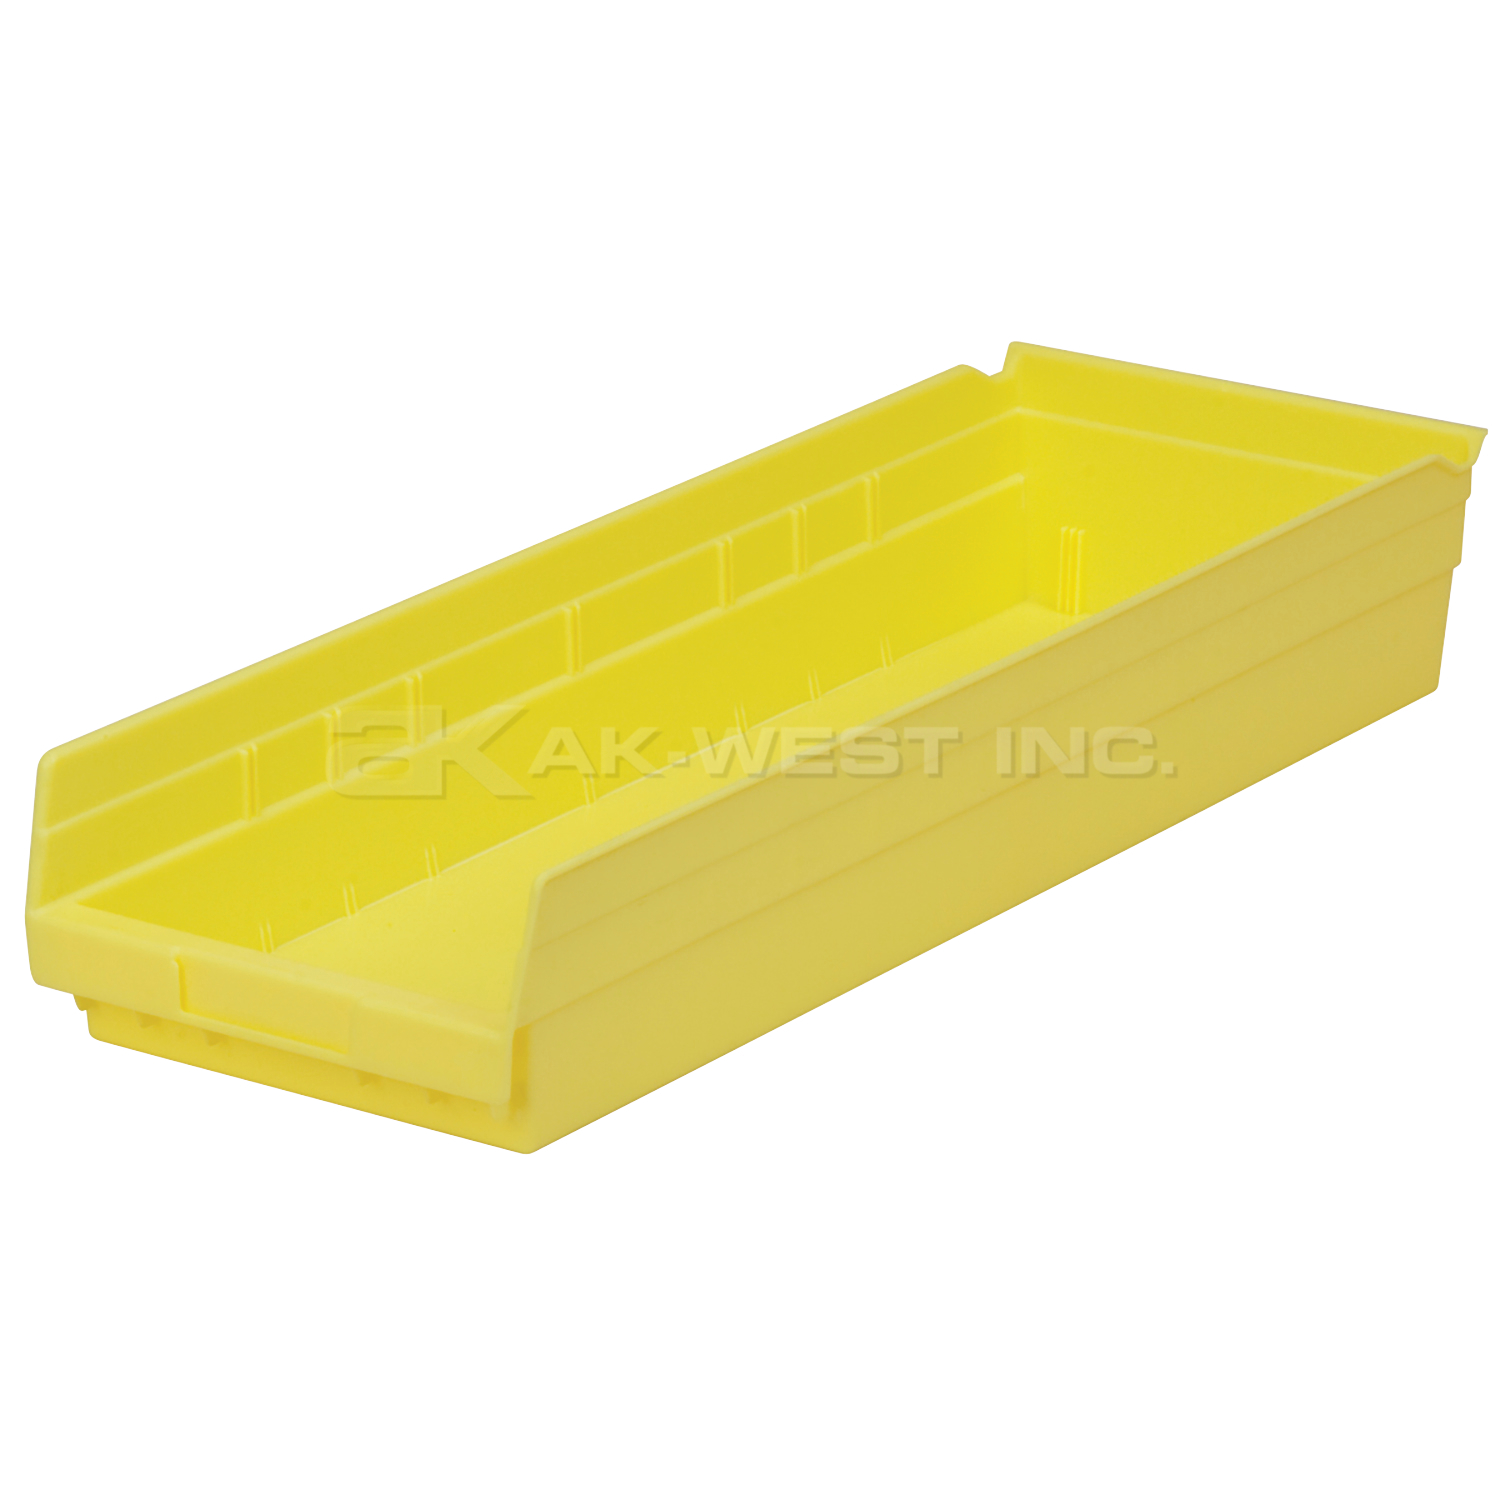 Yellow, 23-5/8" x 8-3/8" x 4" Shelf Bin (6 Per Carton)